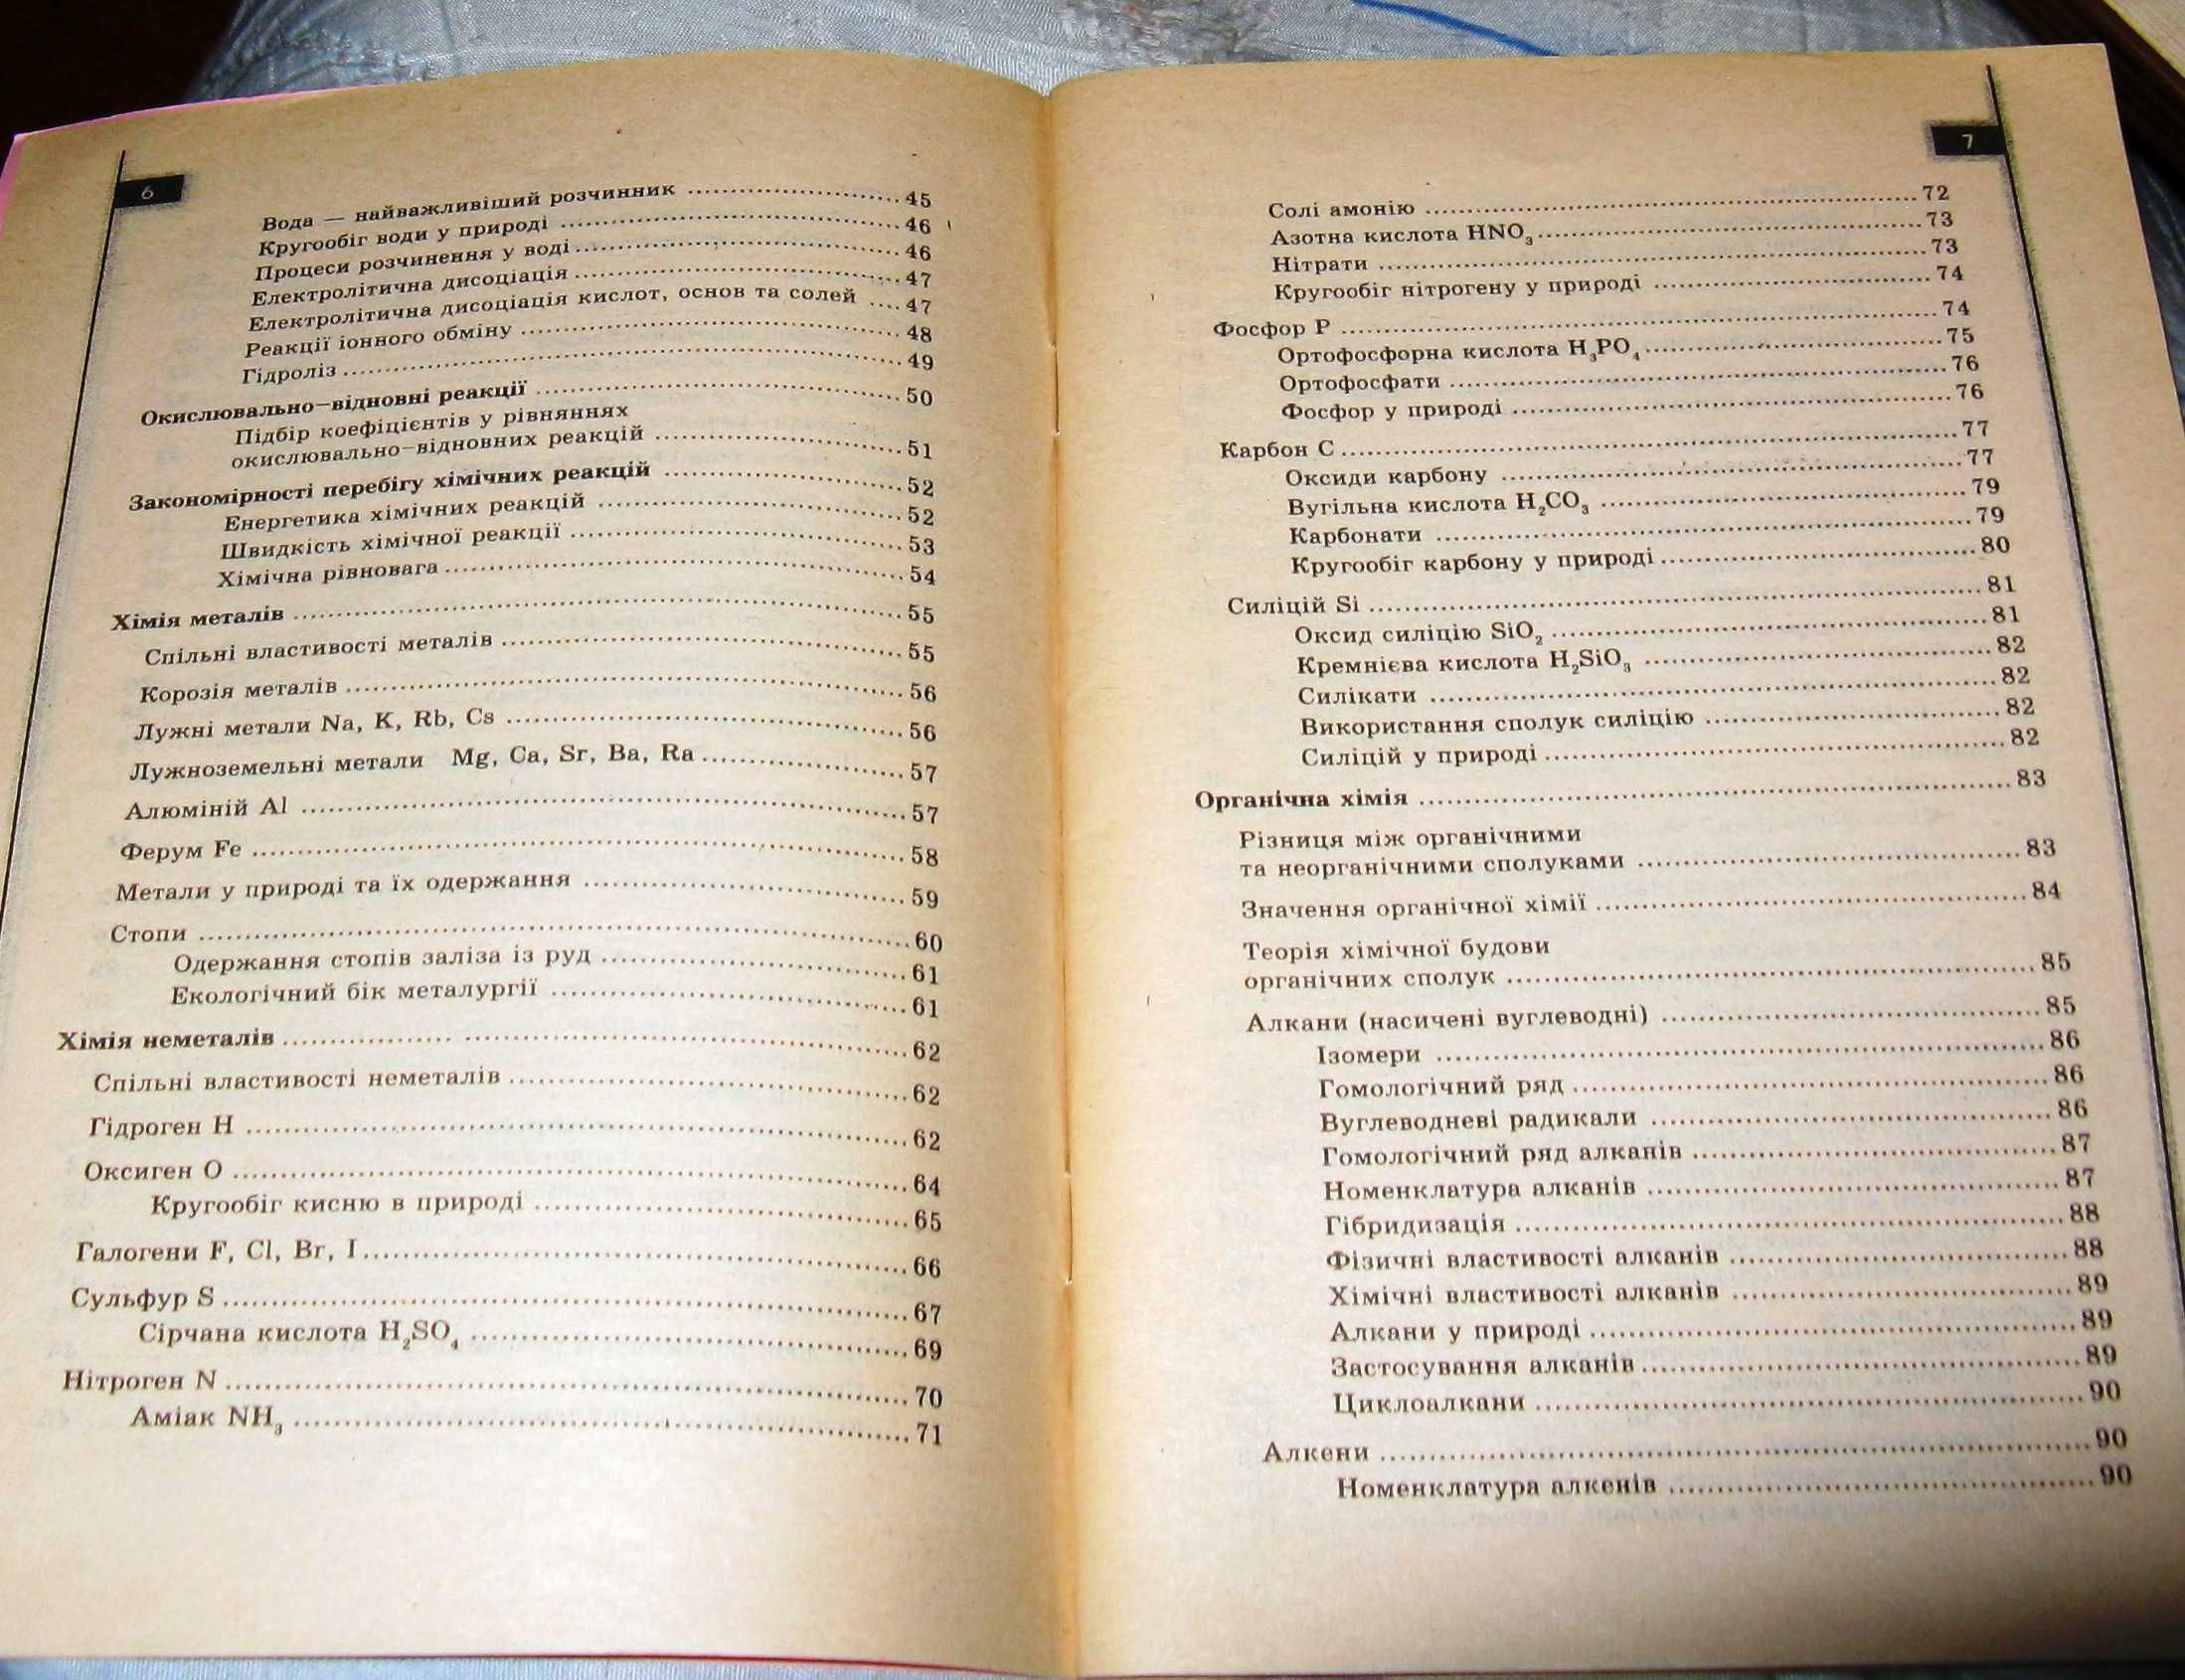 Книга Хімія у визначеннях, таблицях і схемах 8-11 класи А.Д. Бочеваров